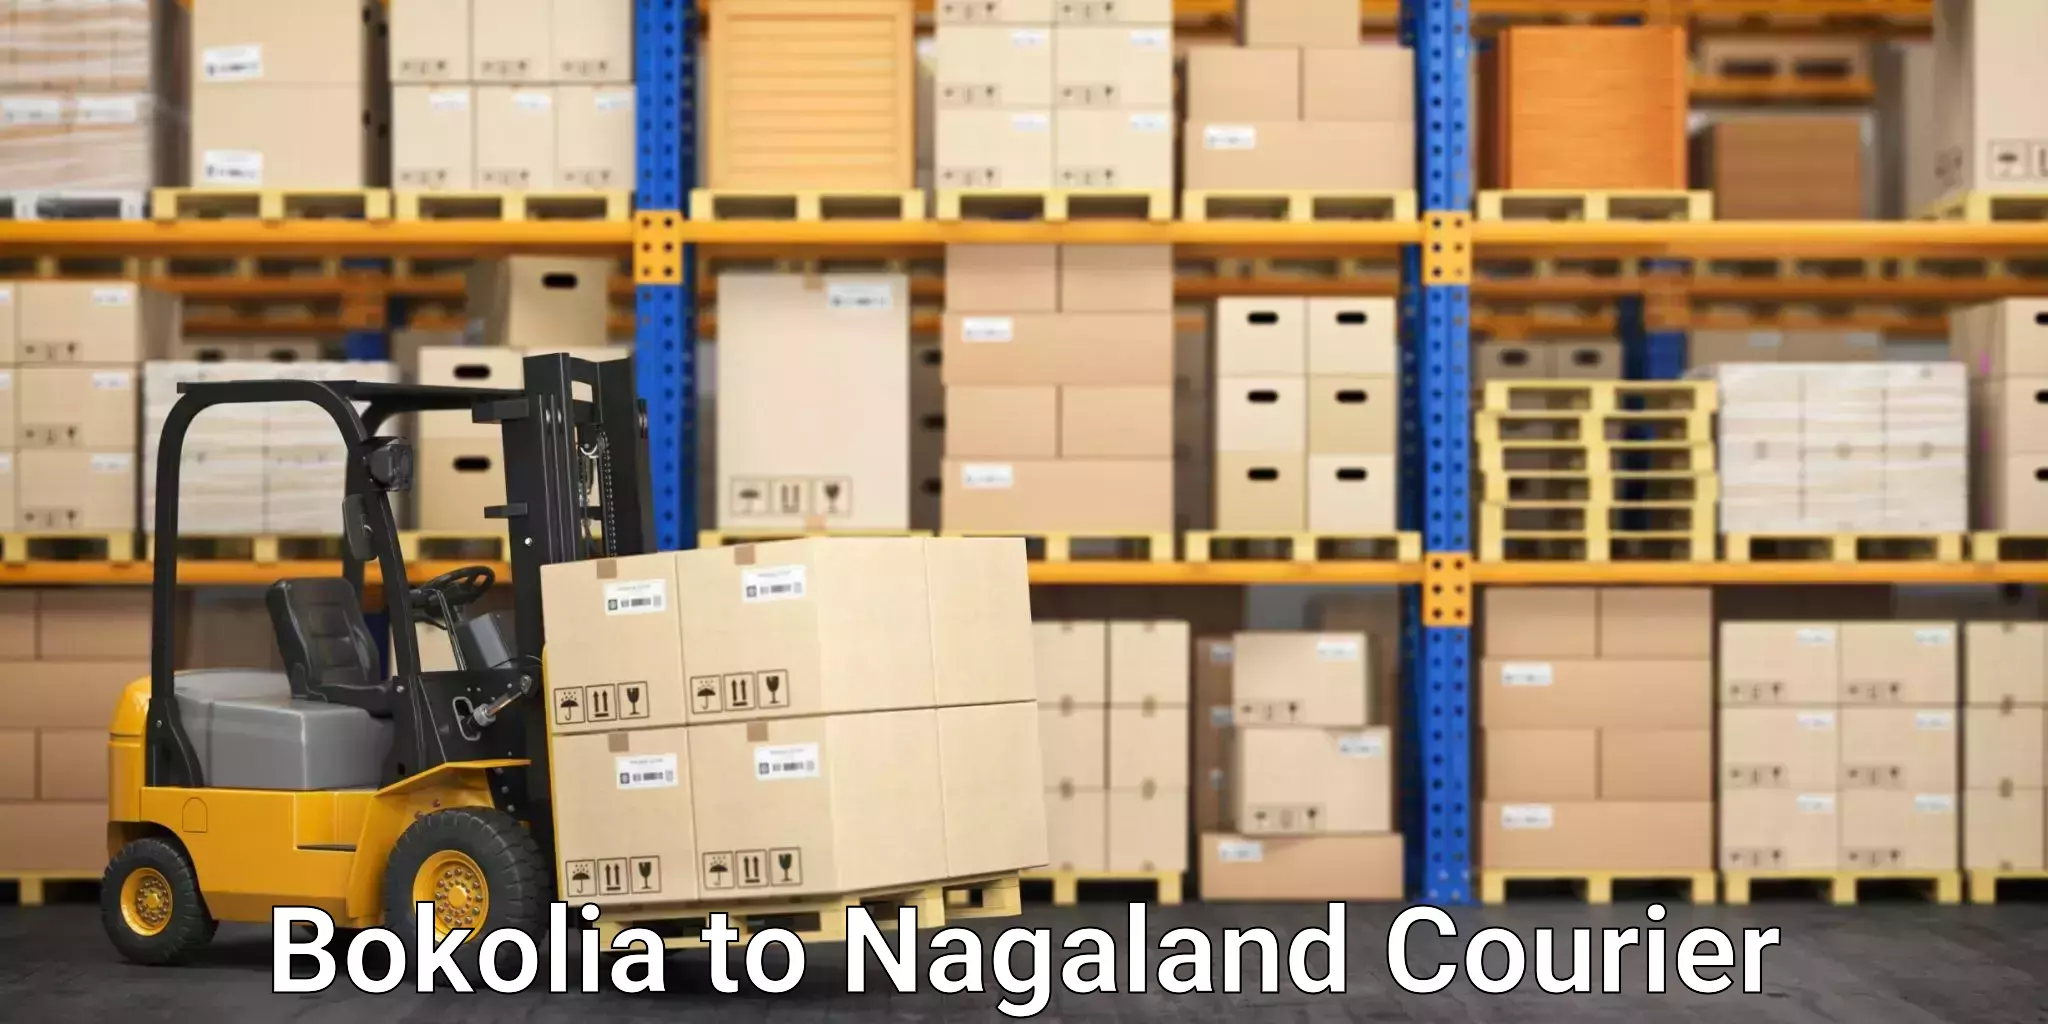 Efficient shipping platforms Bokolia to Nagaland